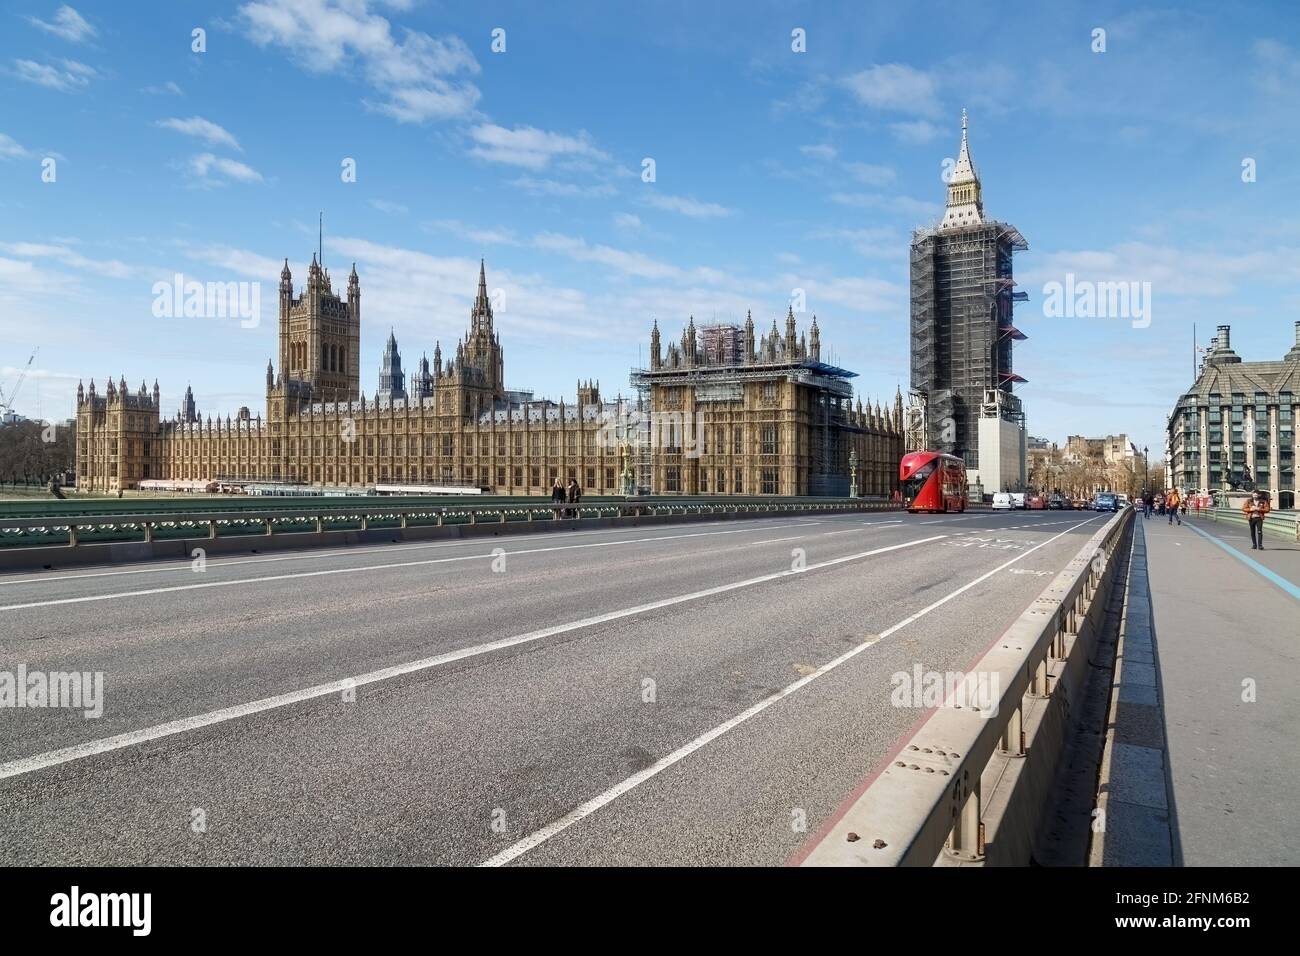 Les chambres du Parlement de l'autre côté du pont de Westminster.QUELQUES piétons portent un masque facial et la circulation est visible à l'extrémité du pont. Banque D'Images